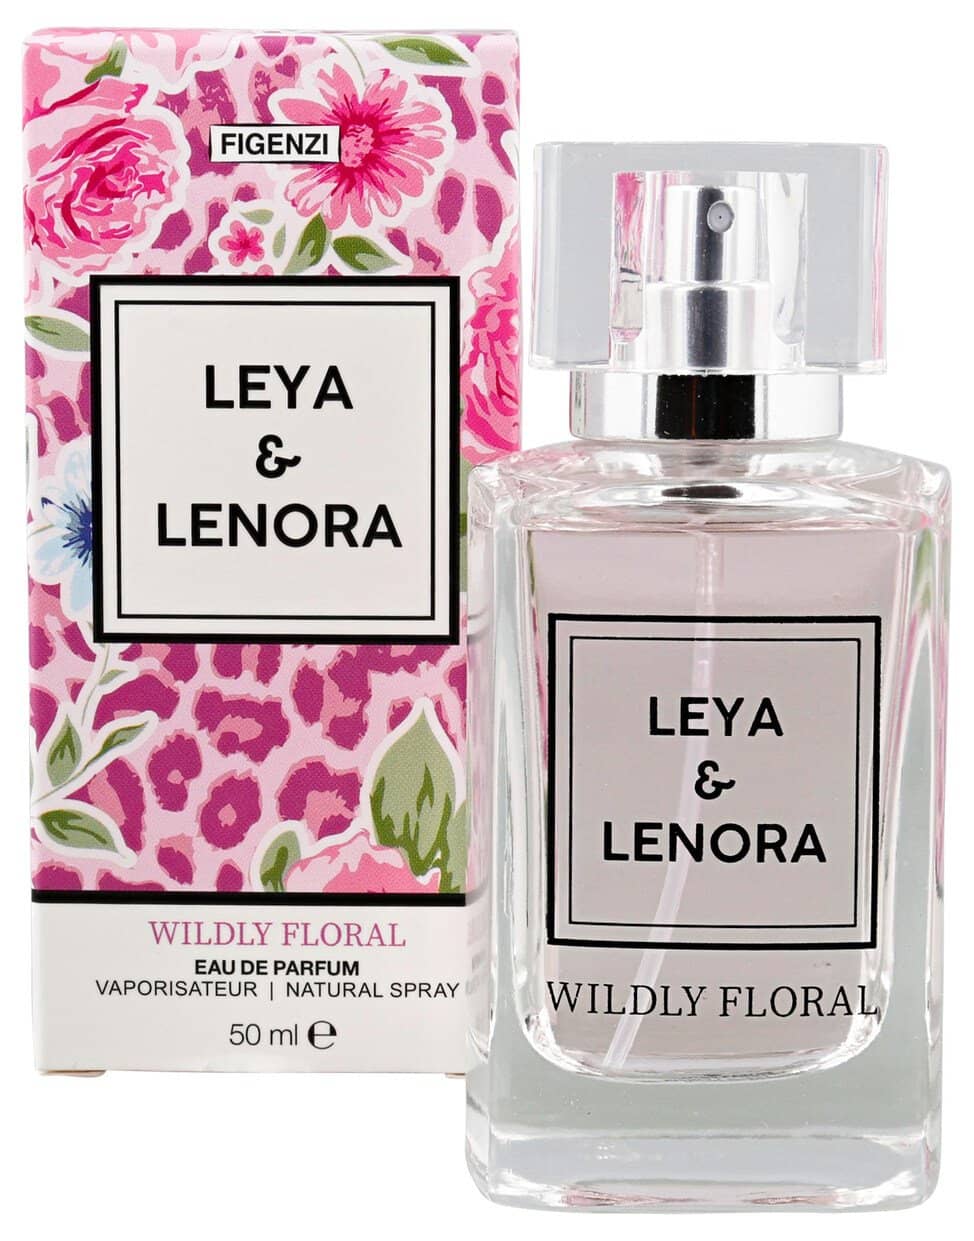 Leya & Lenora - Wildly Floral